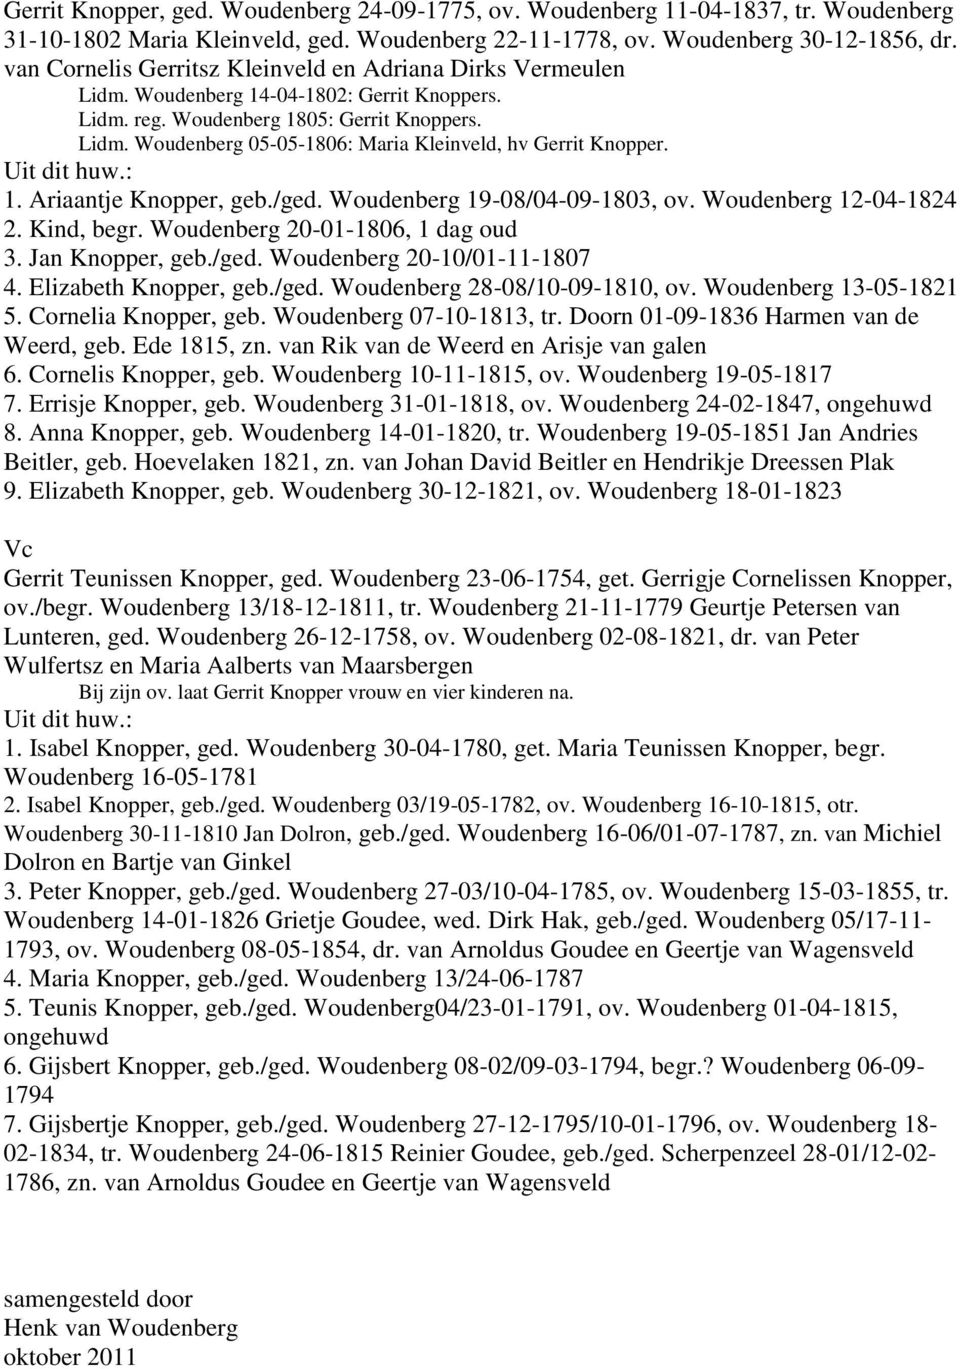 1. Ariaantje Knopper, geb./ged. Woudenberg 19-08/04-09-1803, ov. Woudenberg 12-04-1824 2. Kind, begr. Woudenberg 20-01-1806, 1 dag oud 3. Jan Knopper, geb./ged. Woudenberg 20-10/01-11-1807 4.